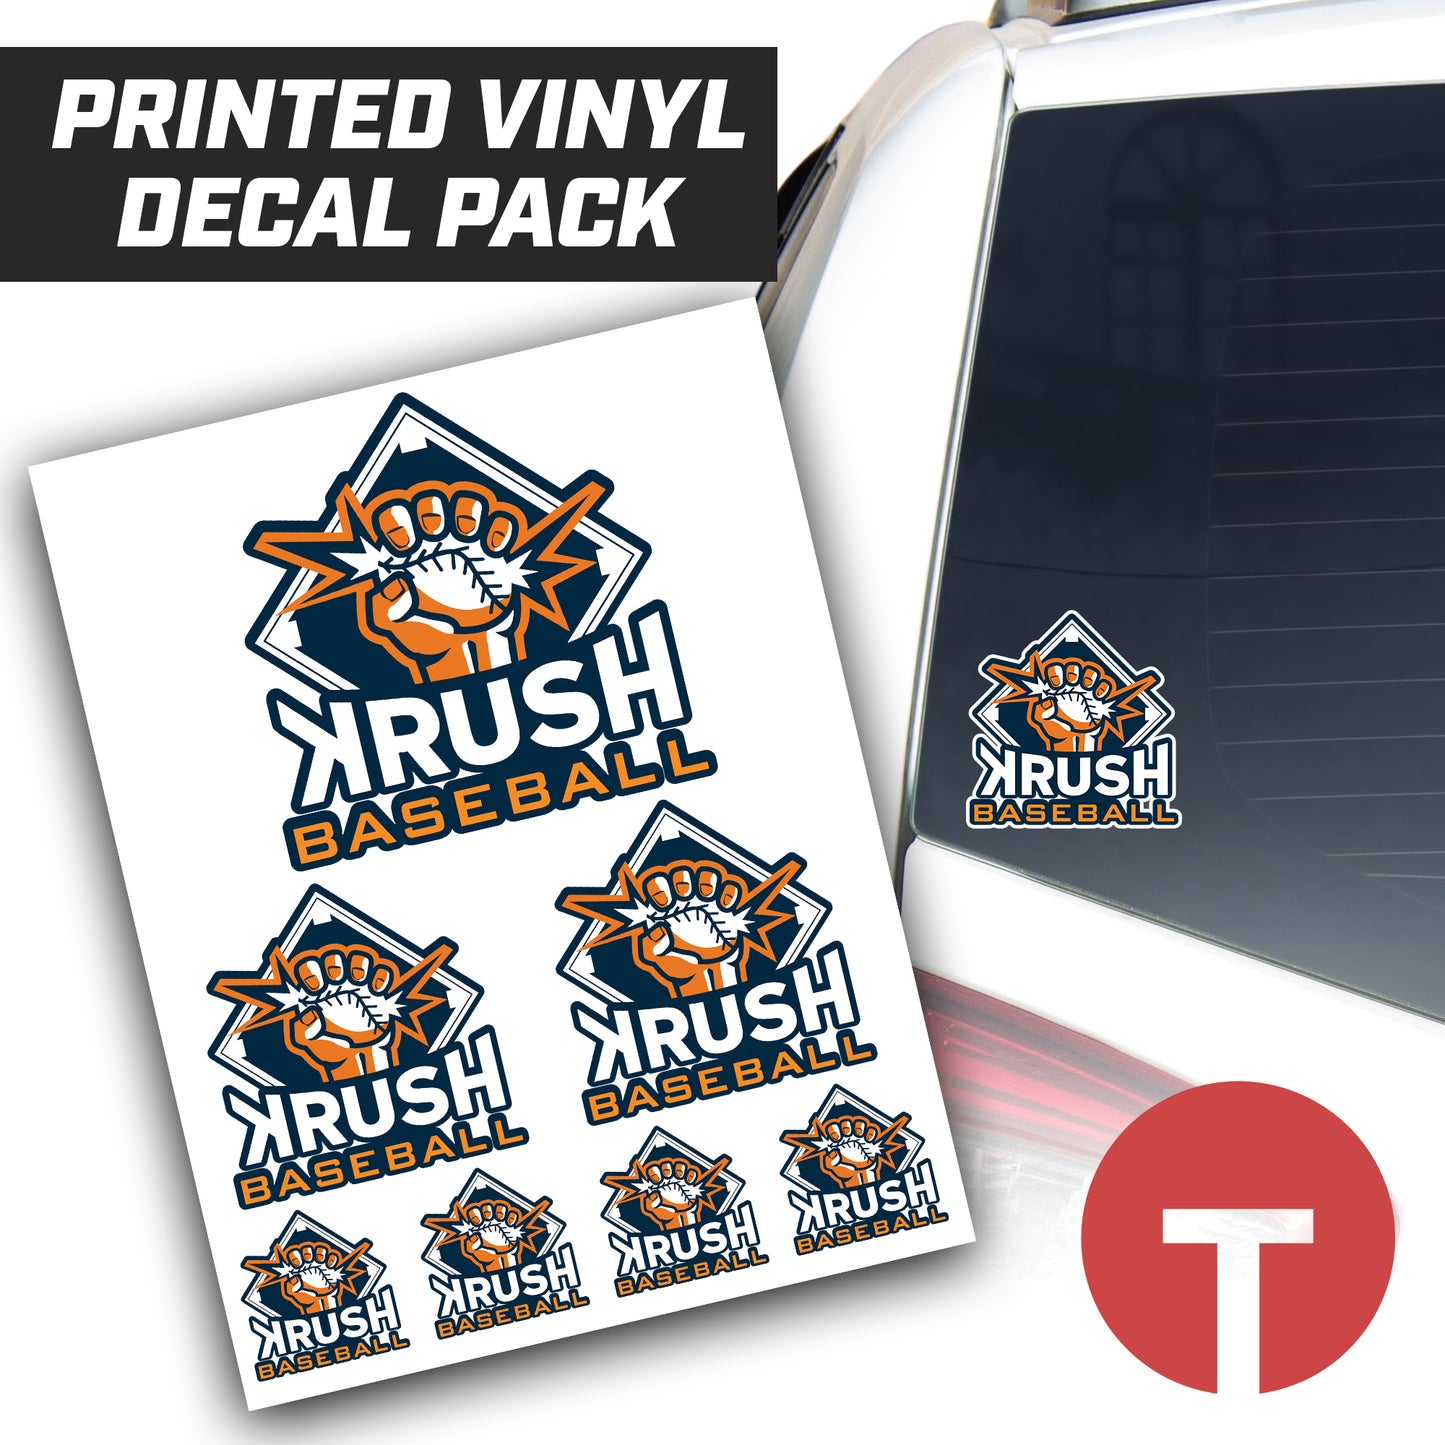 Krush Baseball - Logo Vinyl Decal Pack